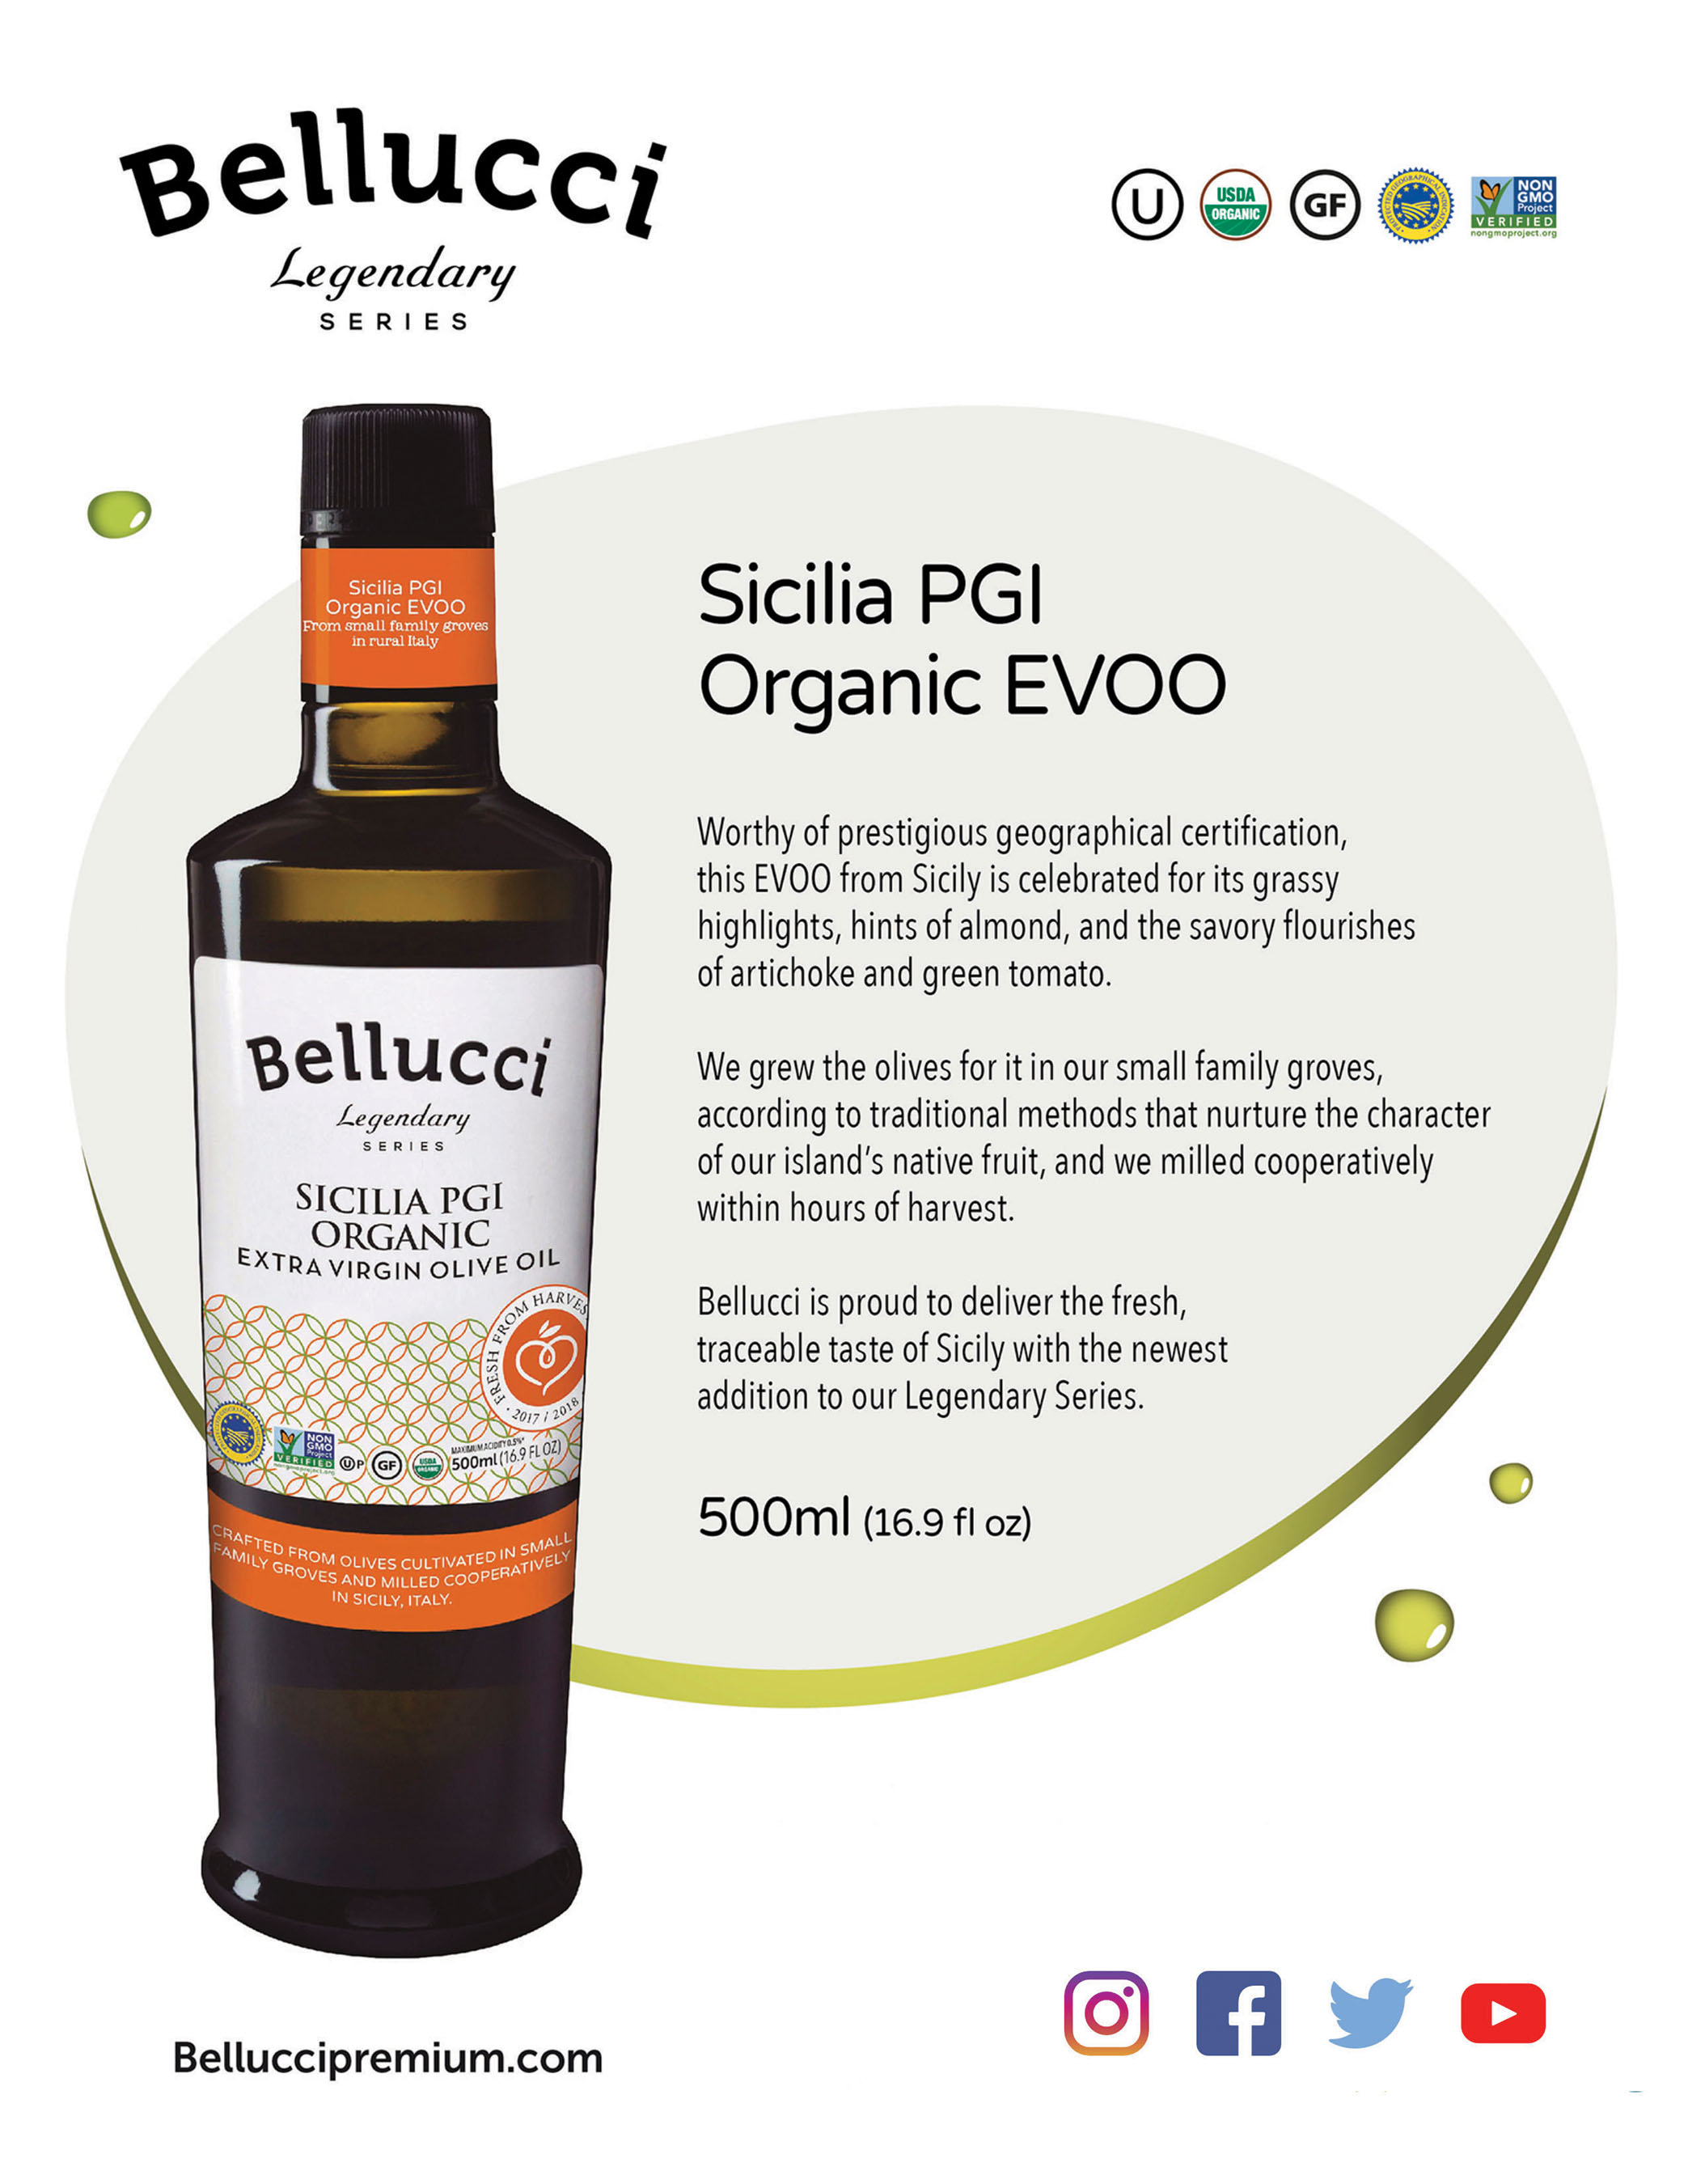 Sicilia PGI Organic Product Details